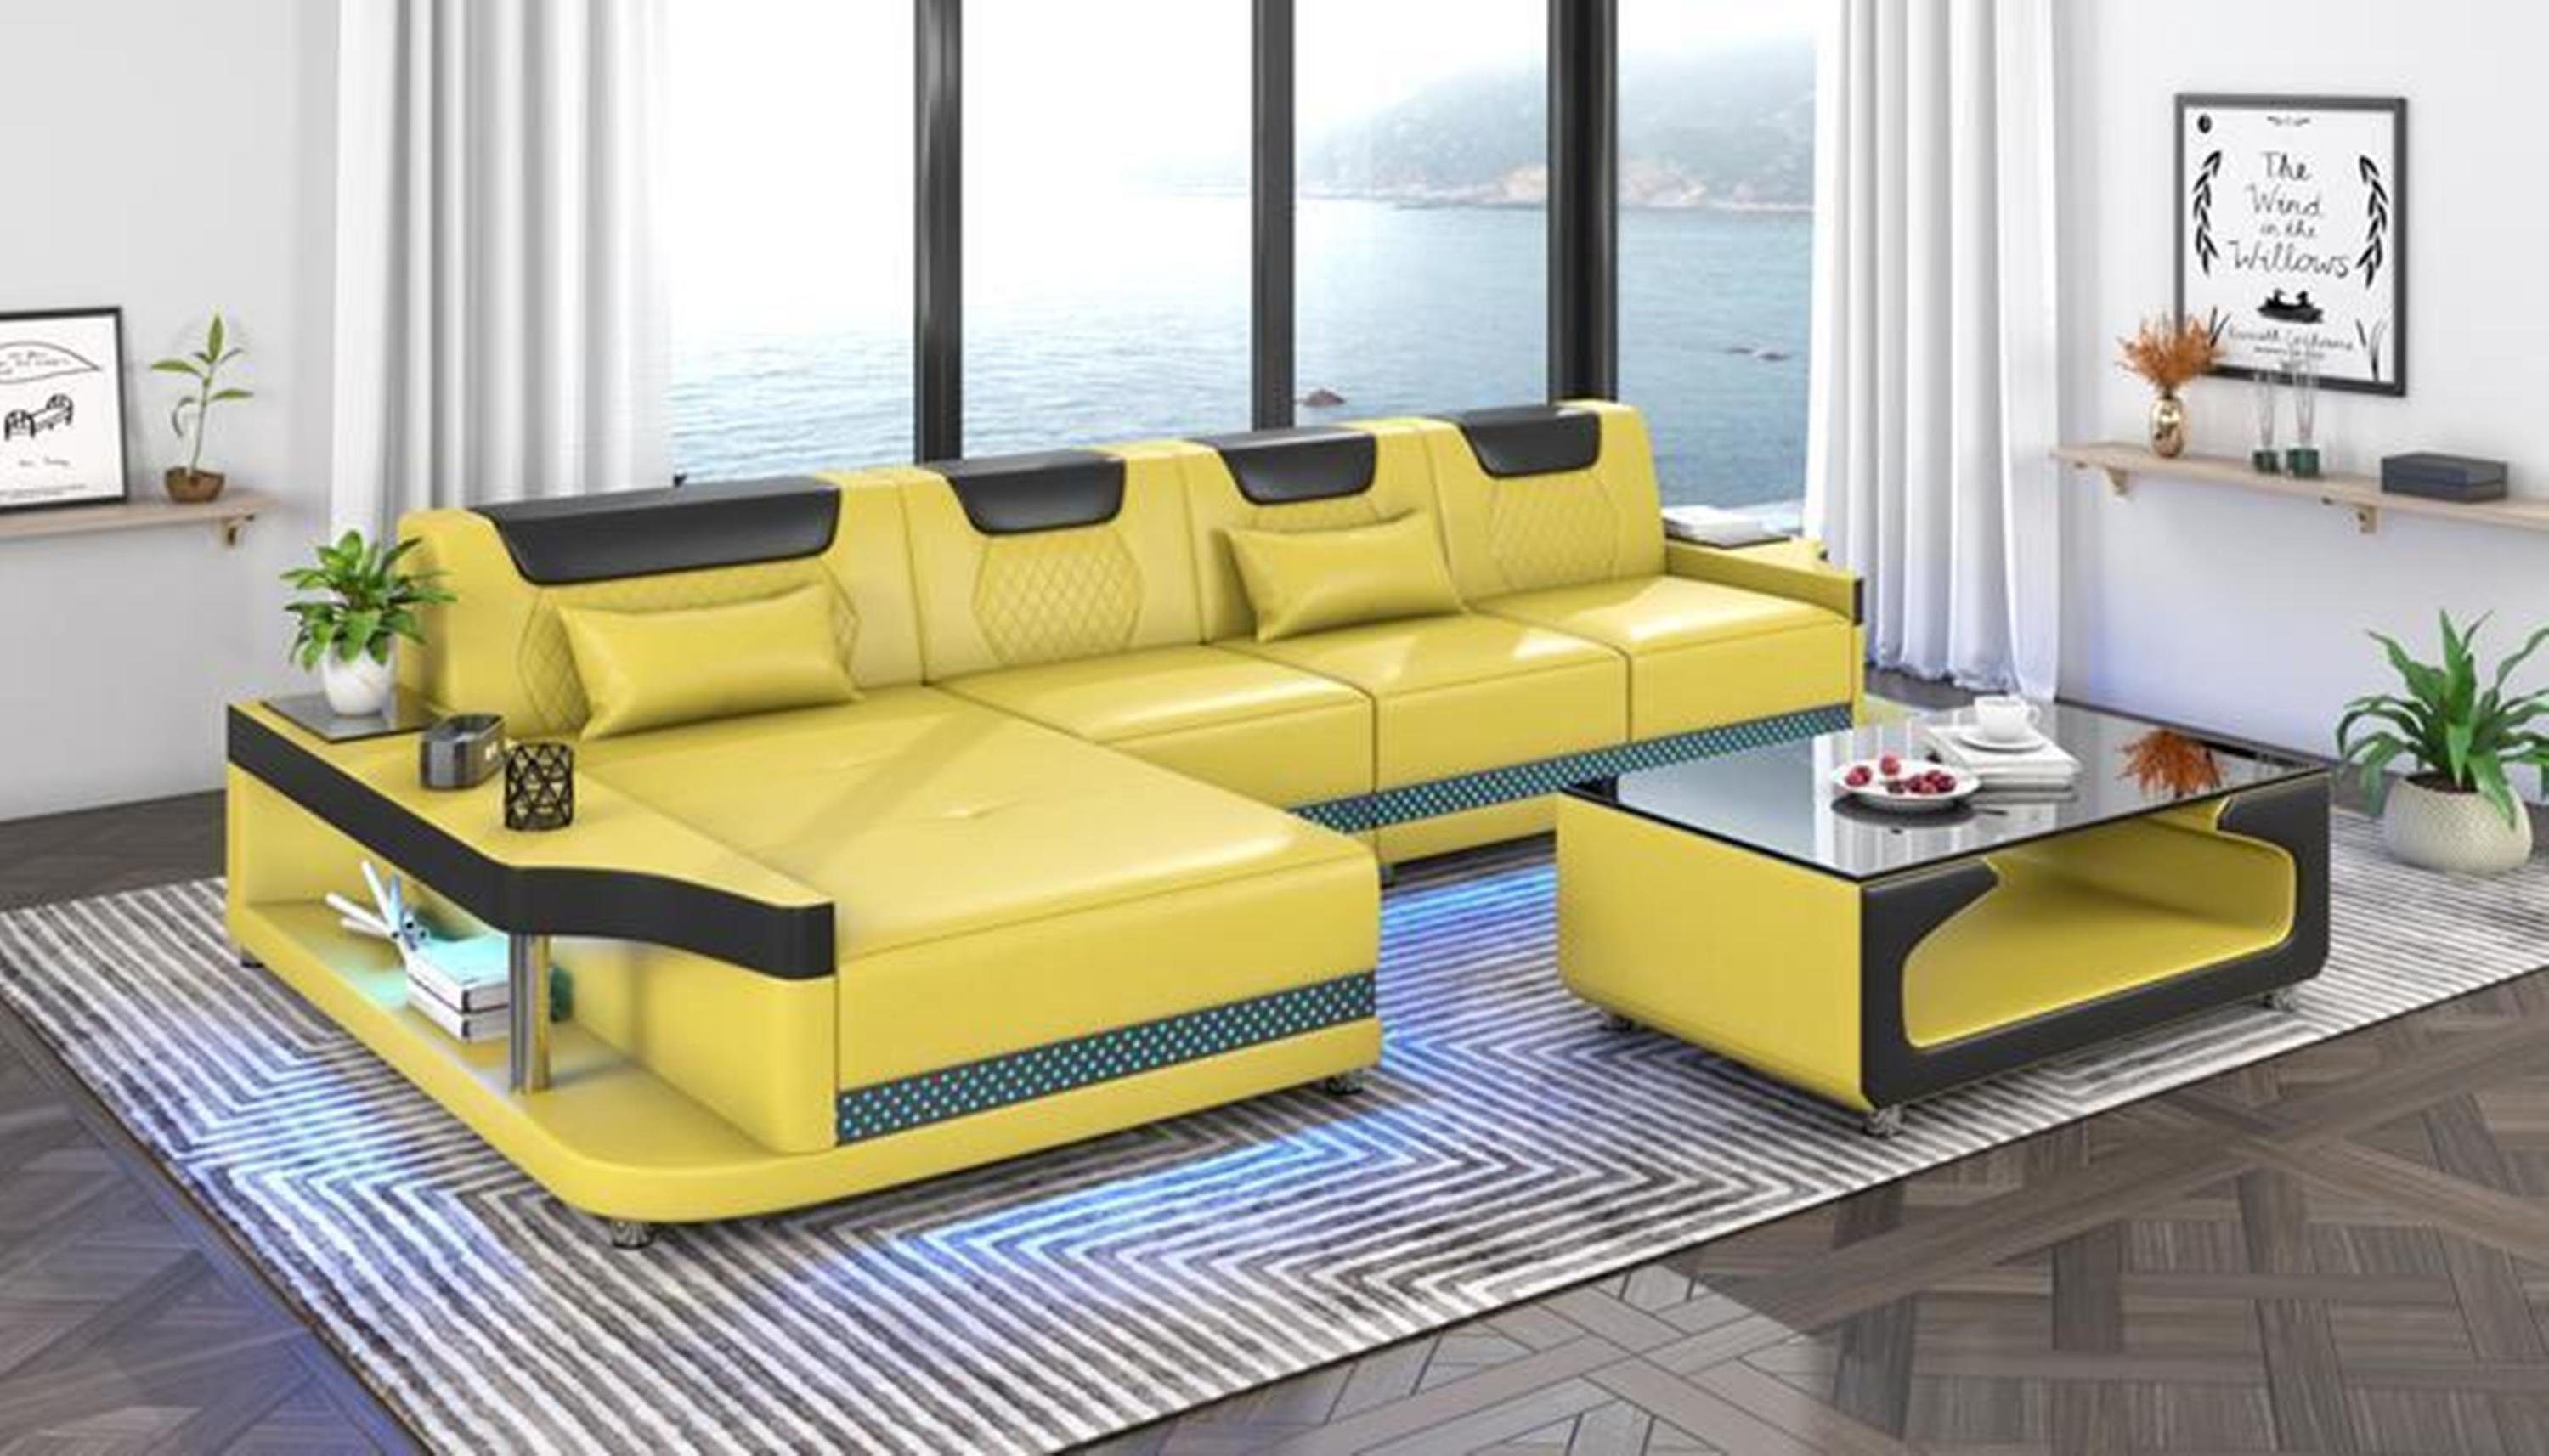 JVmoebel Ecksofa, Design Eckcouch Ecksofa Wohnzimmer Möbel Sofa L Form + Couchtisch Gelb